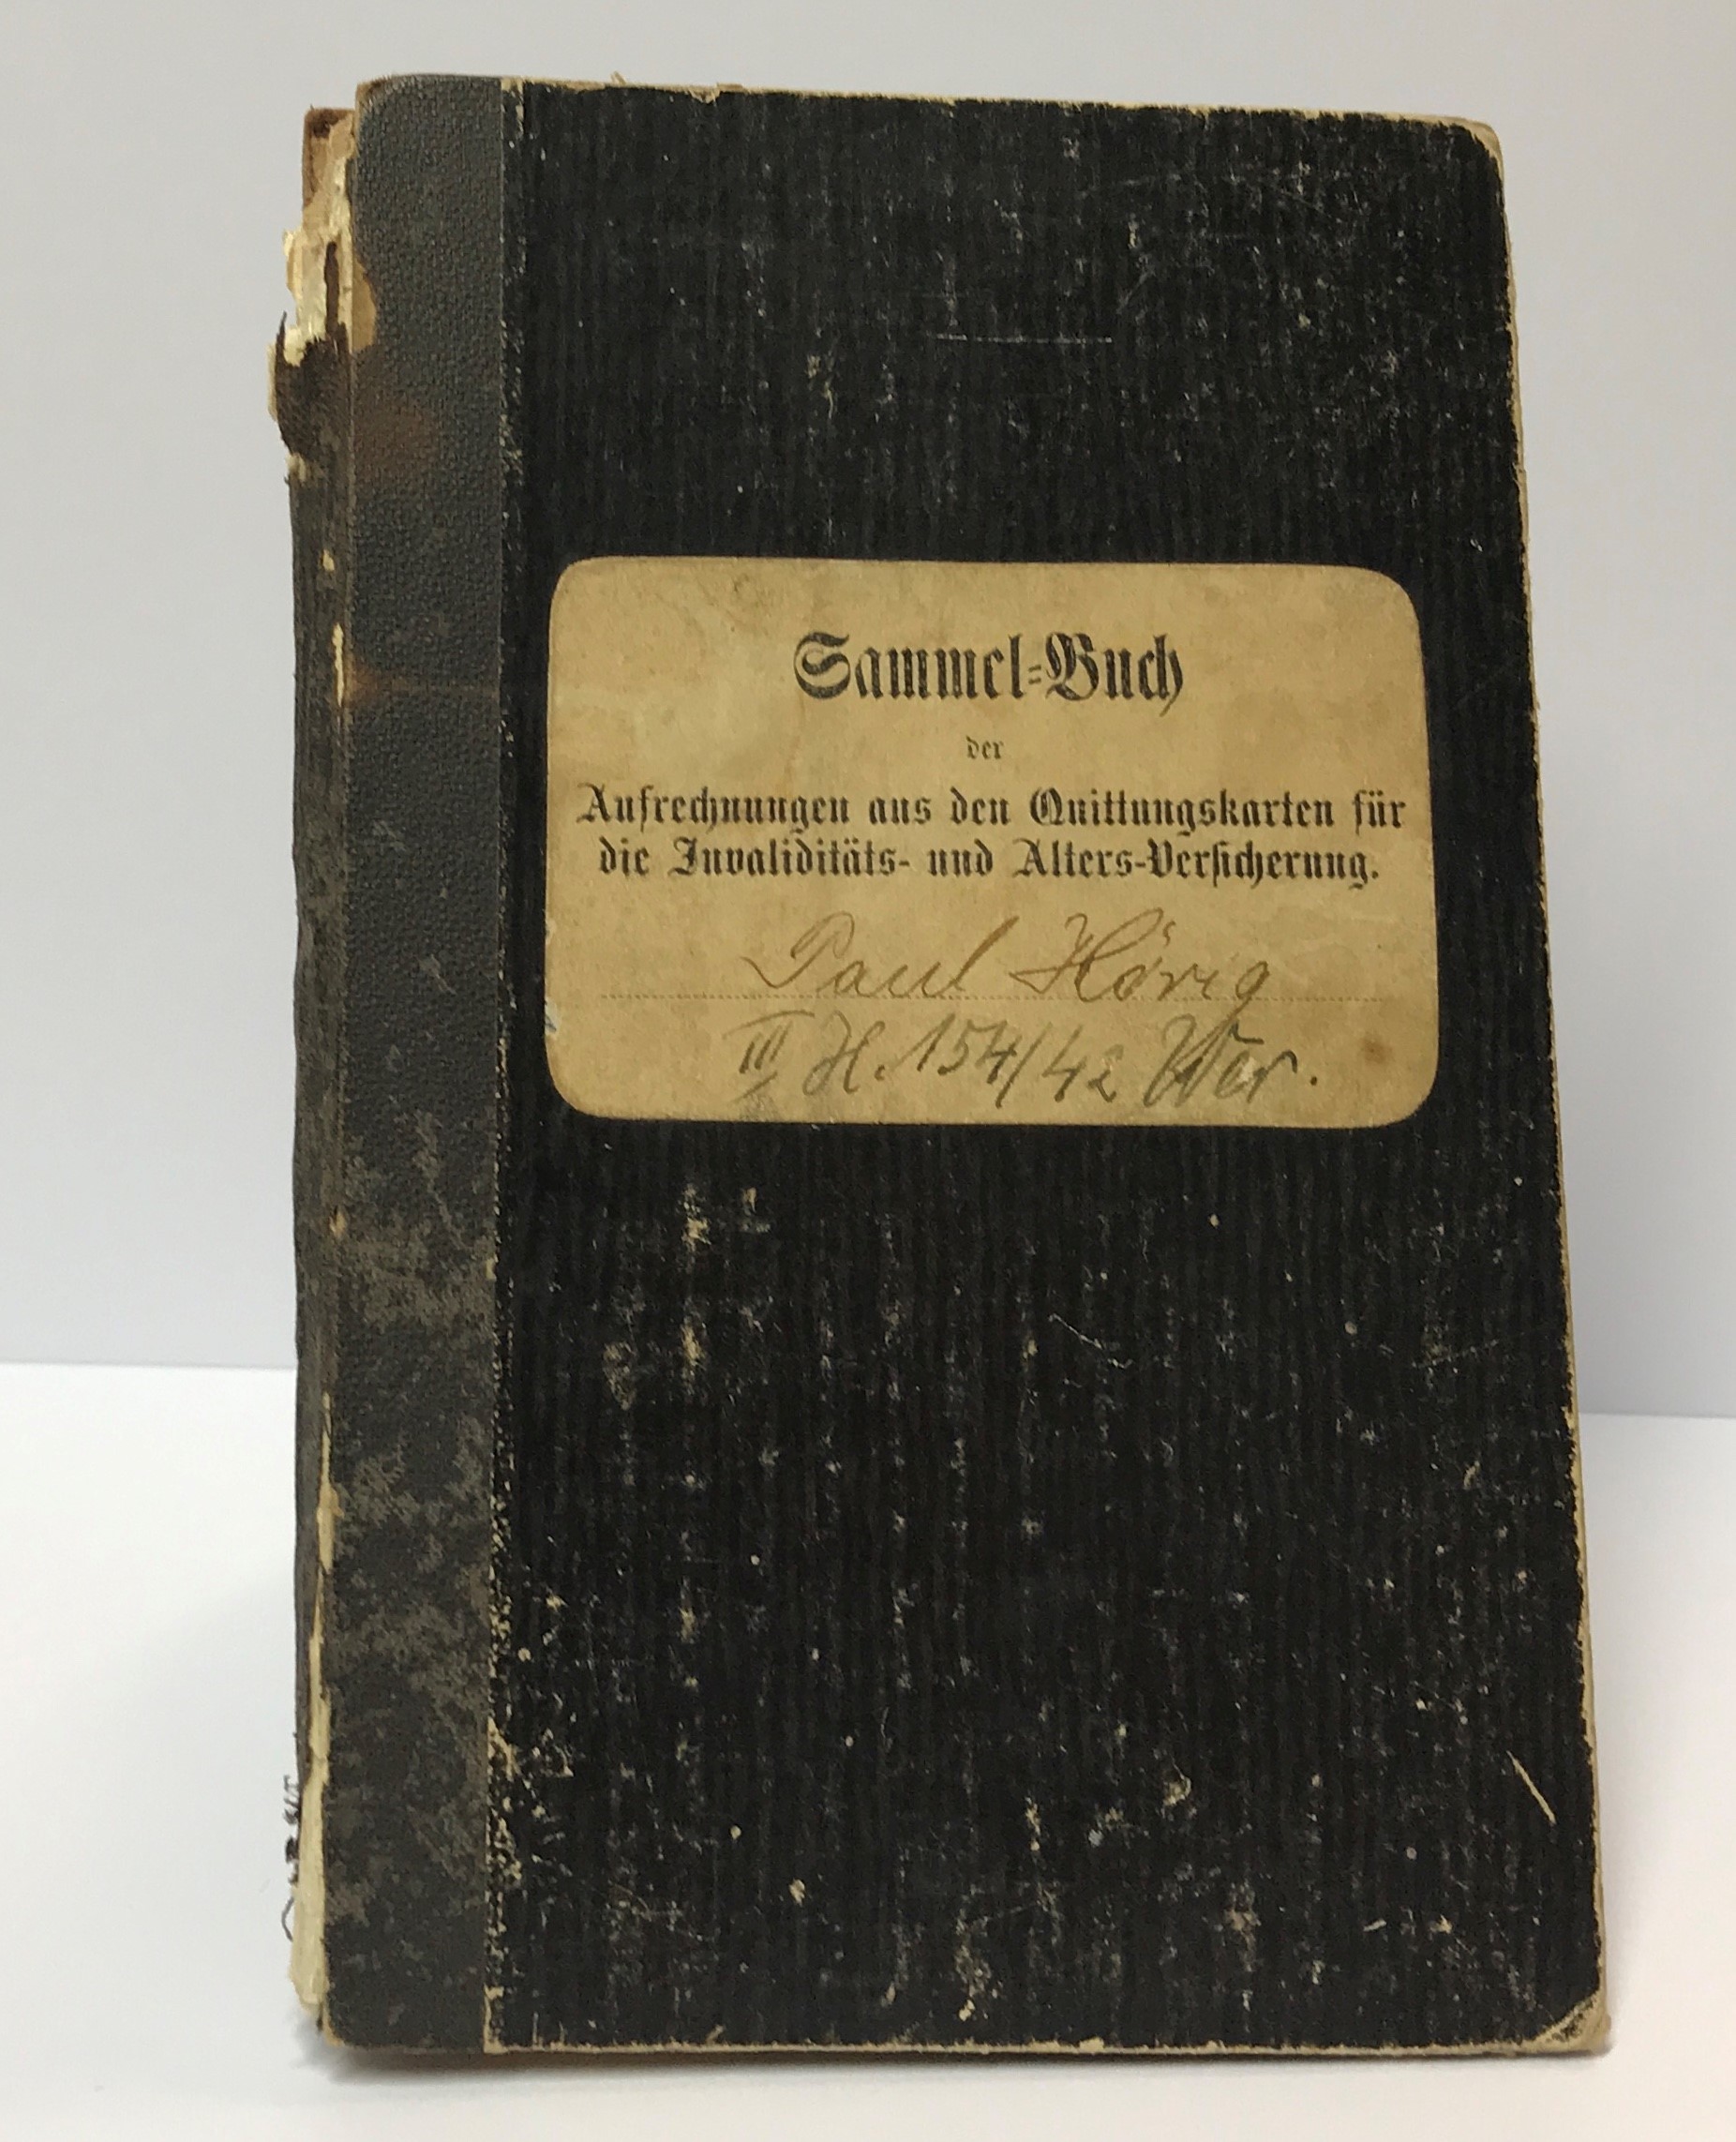 Sammel=Buch // der // Aufrechnungen aus den Quittungskarten für // die Invaliditäts- und Alters-Versicherung. (Harzmuseum Wernigerode CC BY-NC-SA)